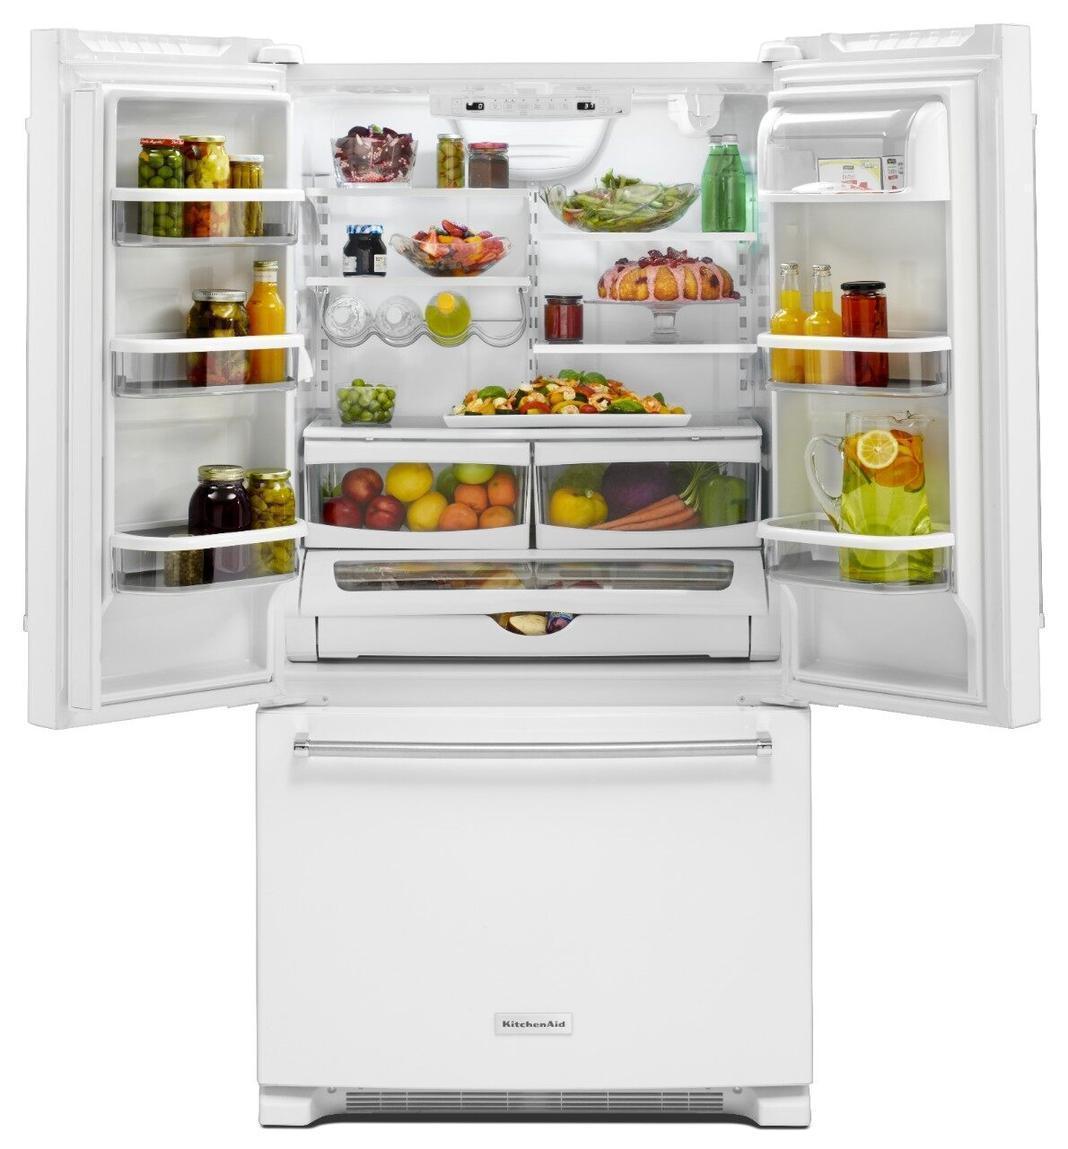 KitchenAid - 35.75 Inch 20 cu. ft French Door Refrigerator in White - KRFC300EWH